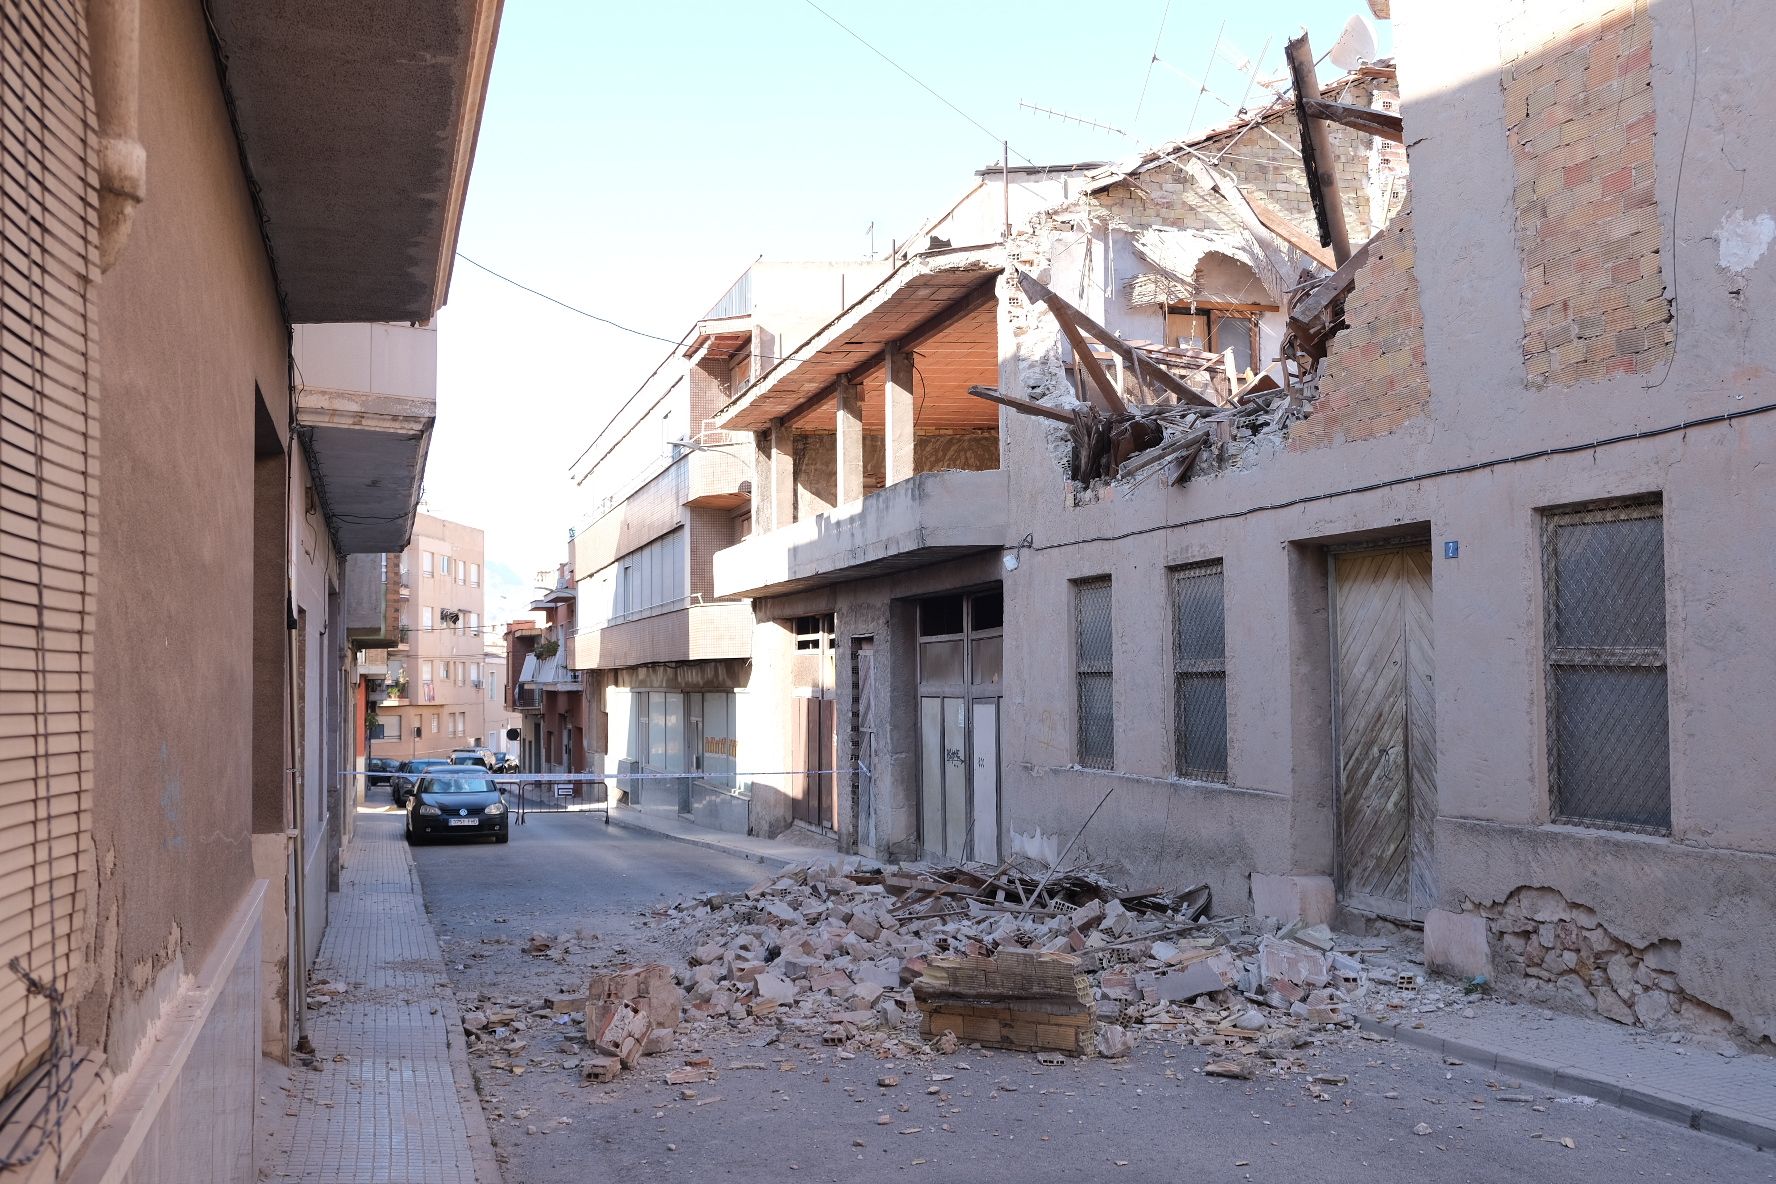 Galería derrumbe de la fachada de una vivienda calle Miguel Hernández Aspe